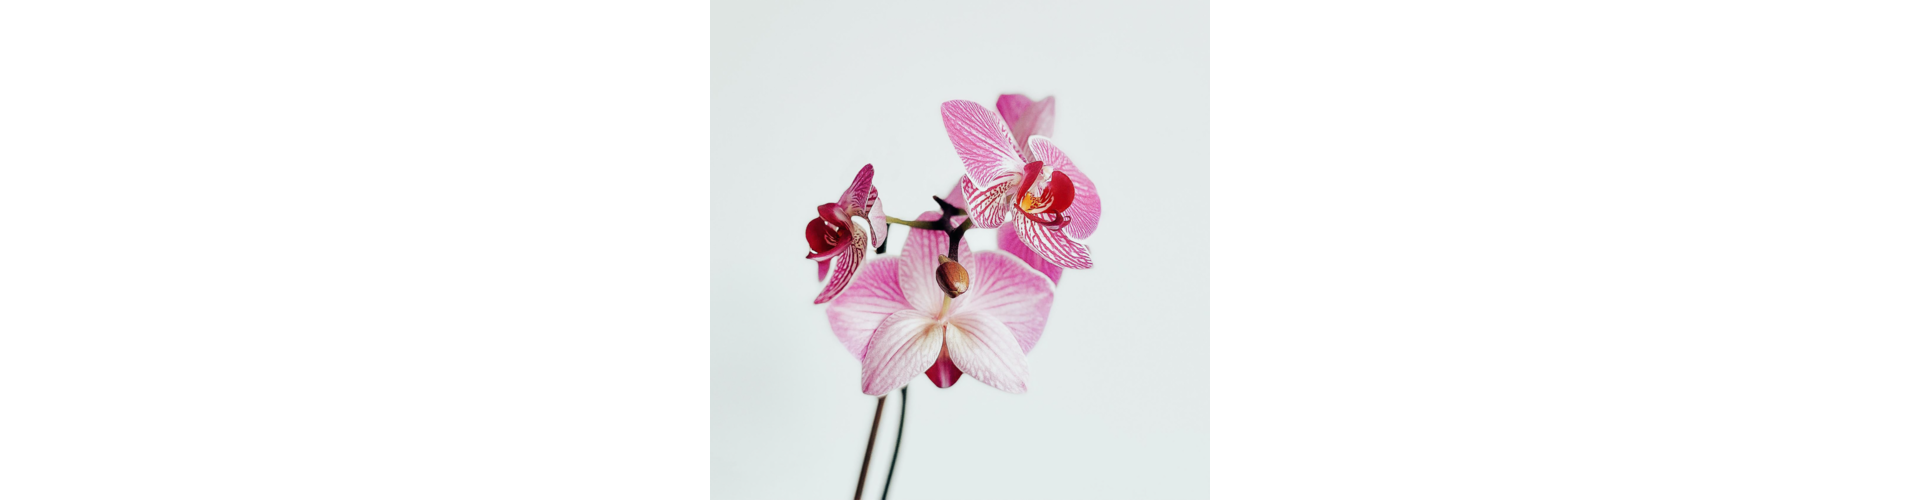 Zloženie kvetov orchidey